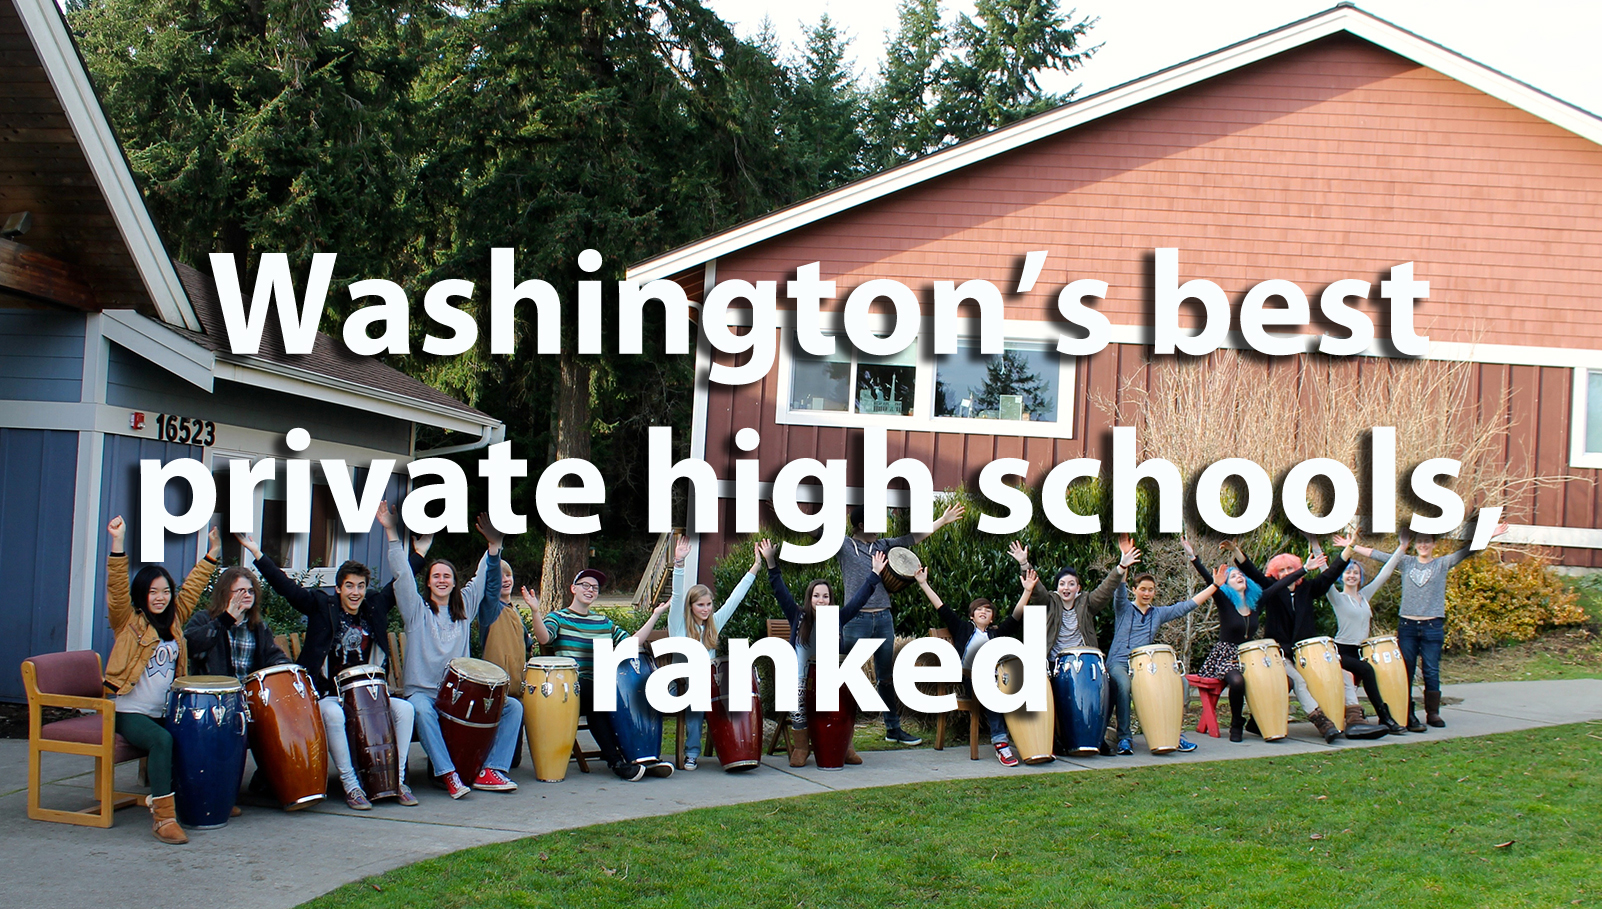 Lakeside School. Lakeside School (Seattle). Best privat